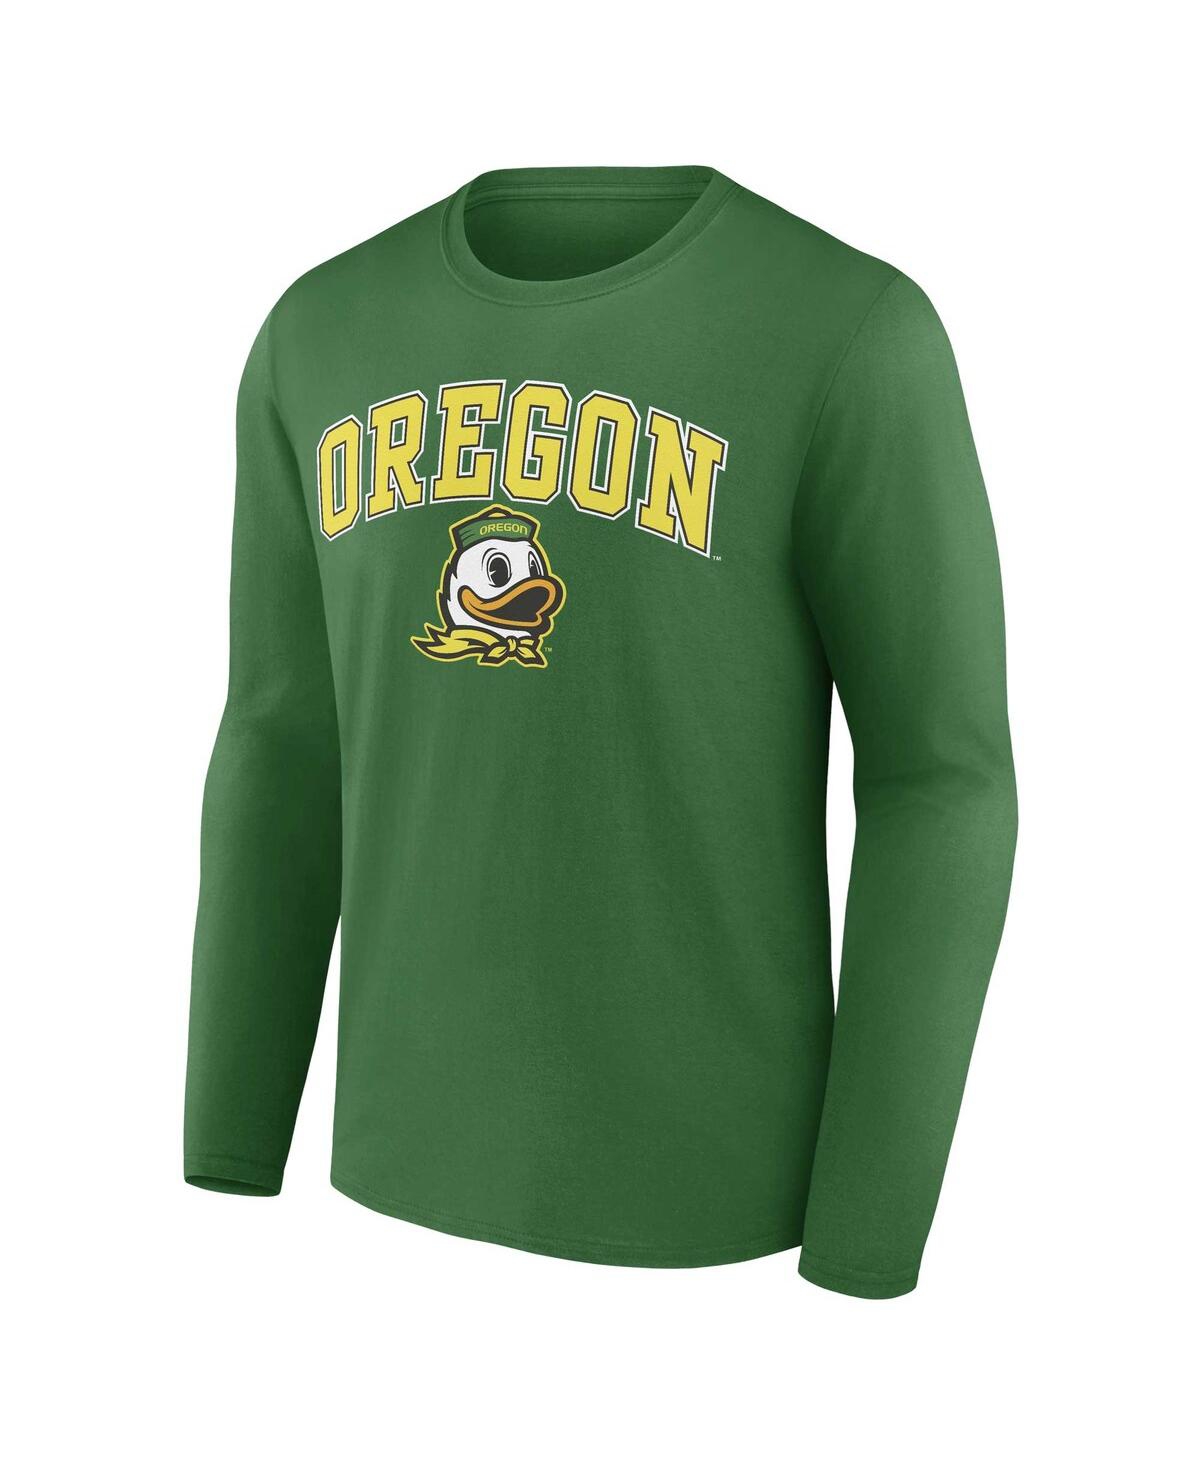 Shop Fanatics Men's  Green Oregon Ducks Campus Long Sleeve T-shirt